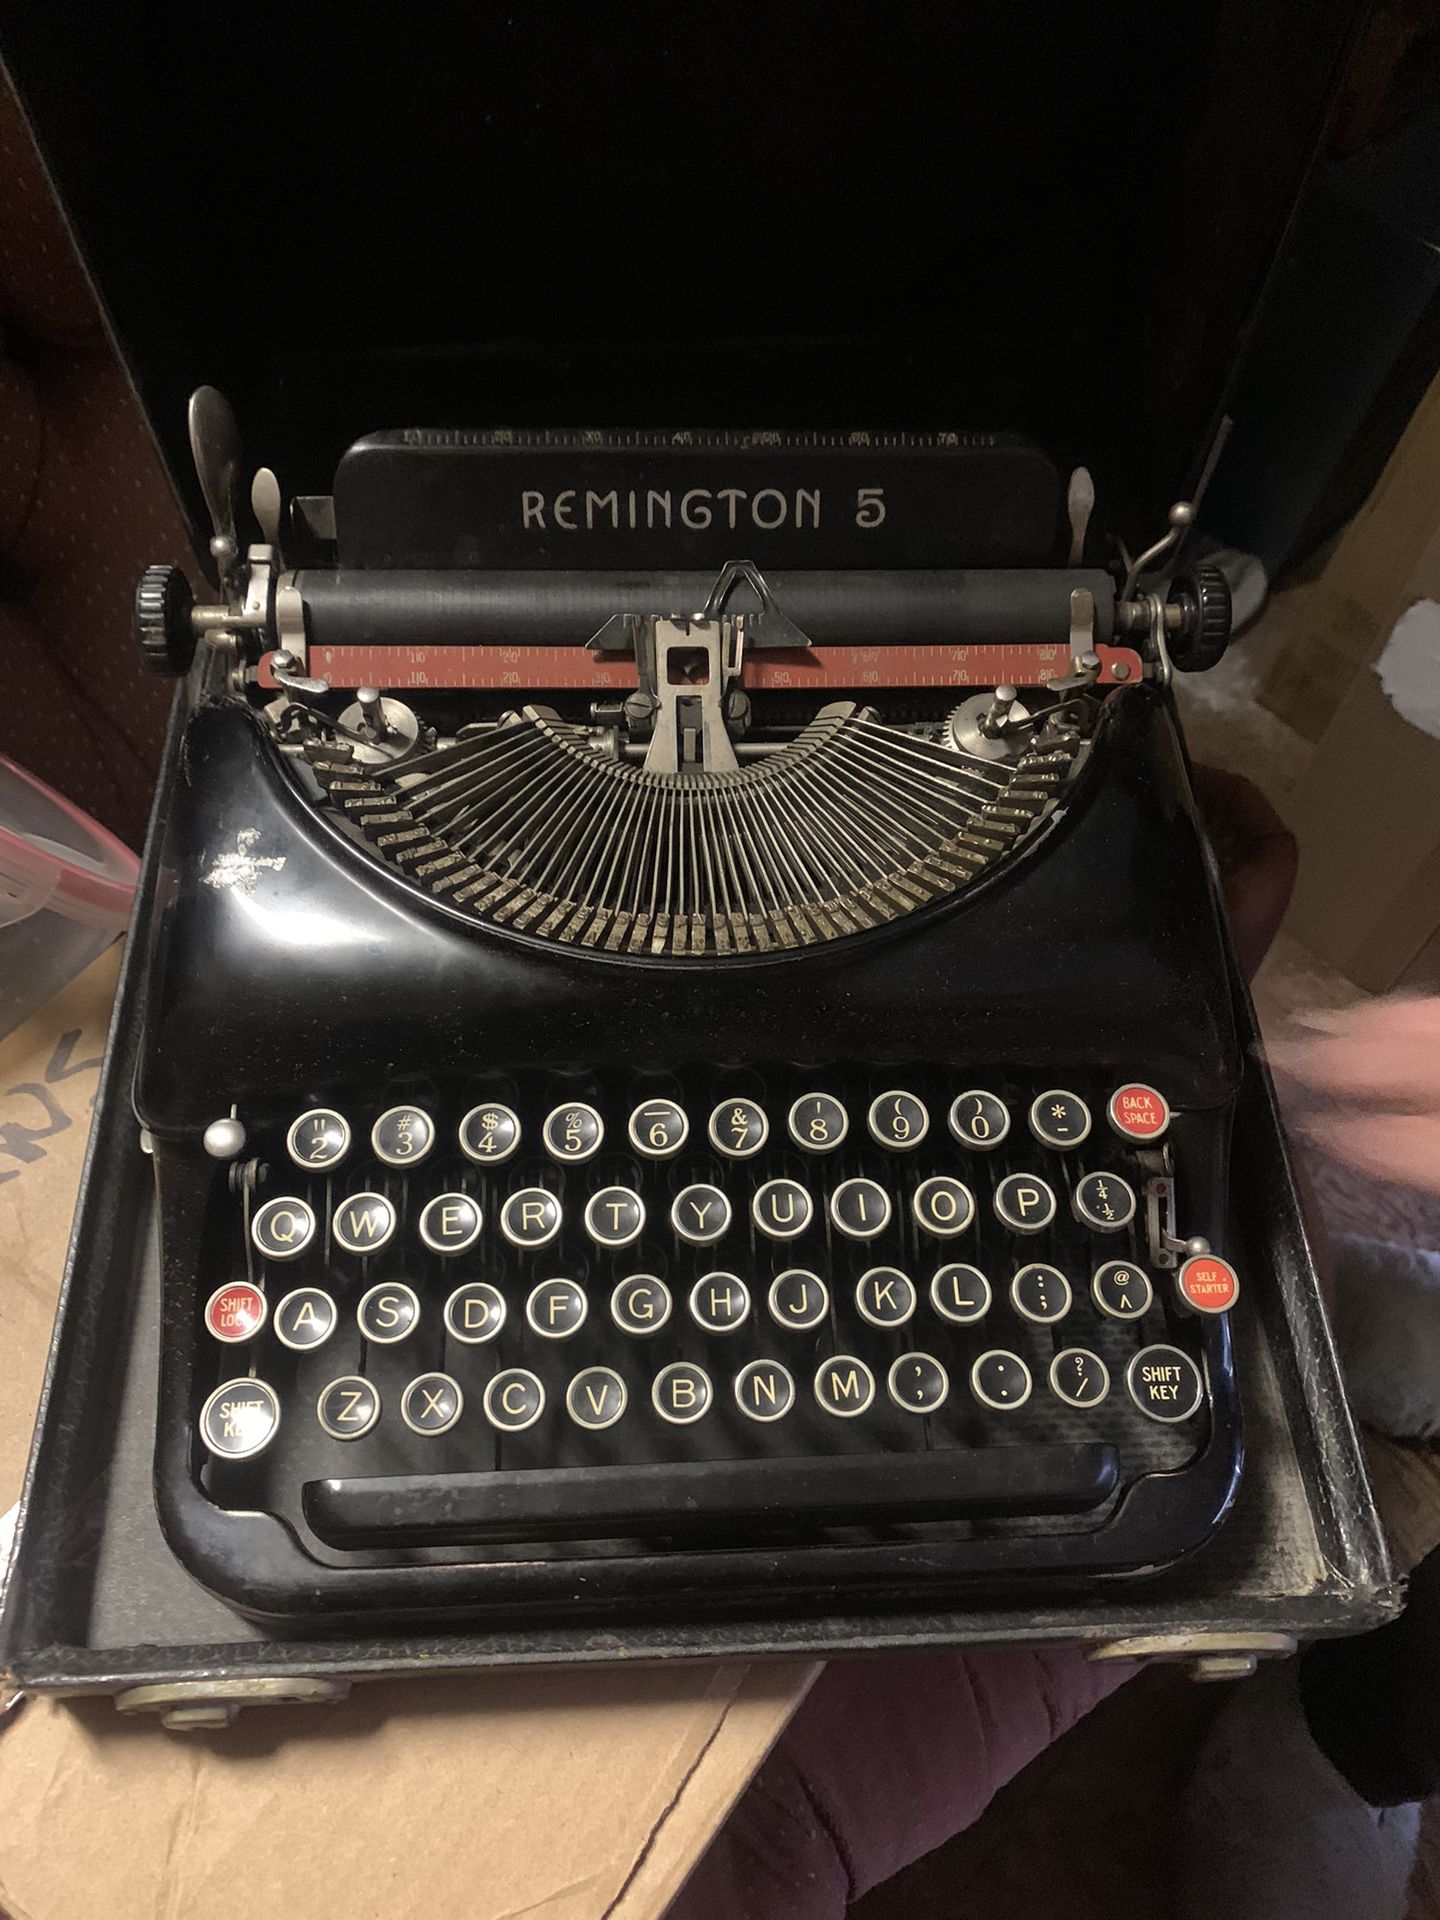 Vintage Remington 5 typewriter